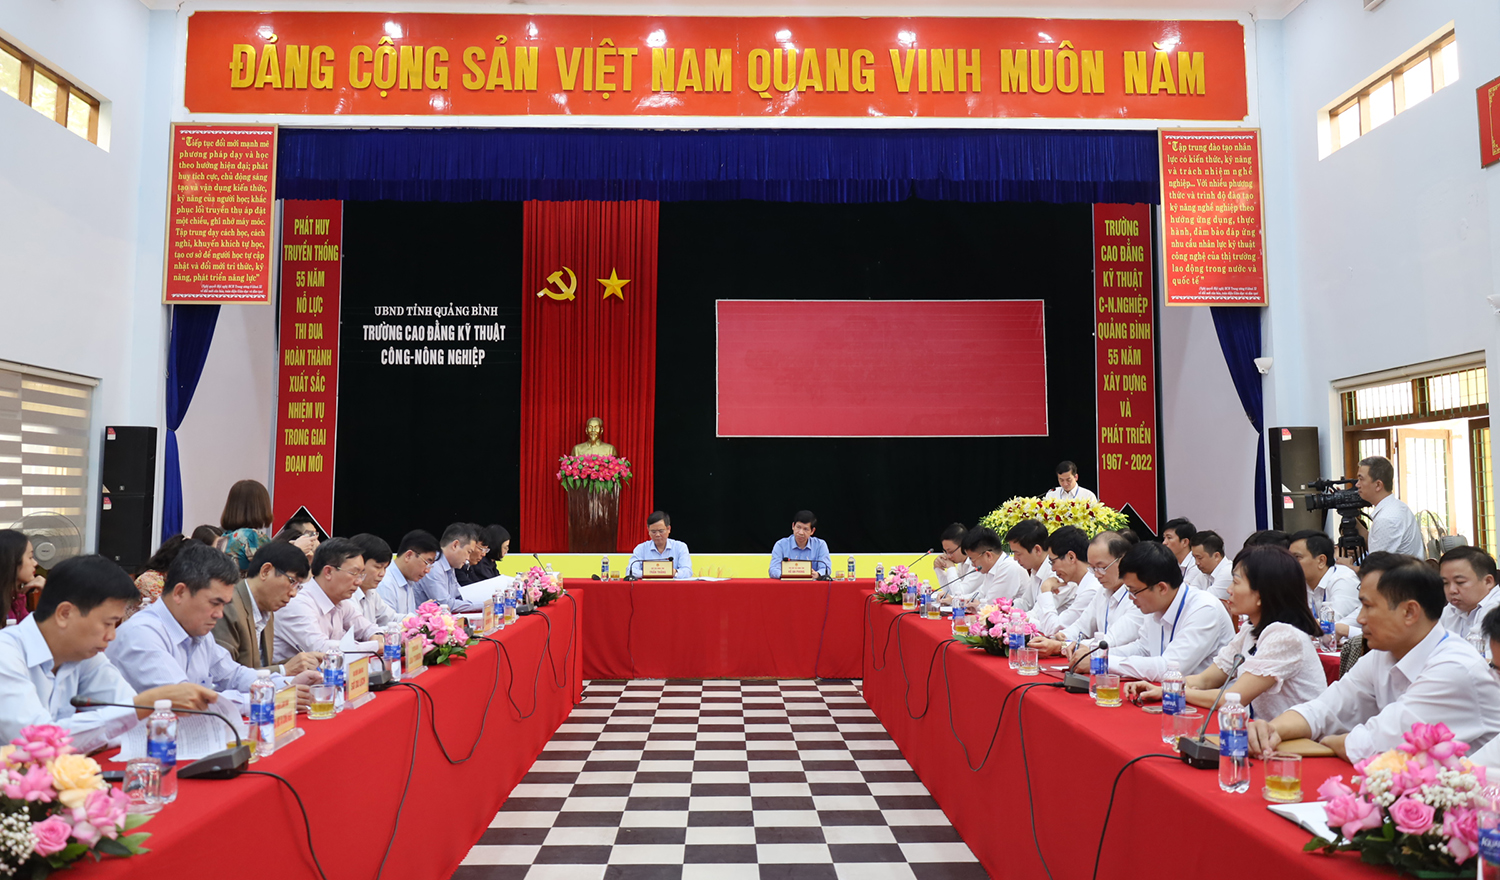 Phát triển Trường cao đẳng kỹ thuật Công-Nông nghiệp Quảng Bình trở thành trường cao đẳng chất lượng cao